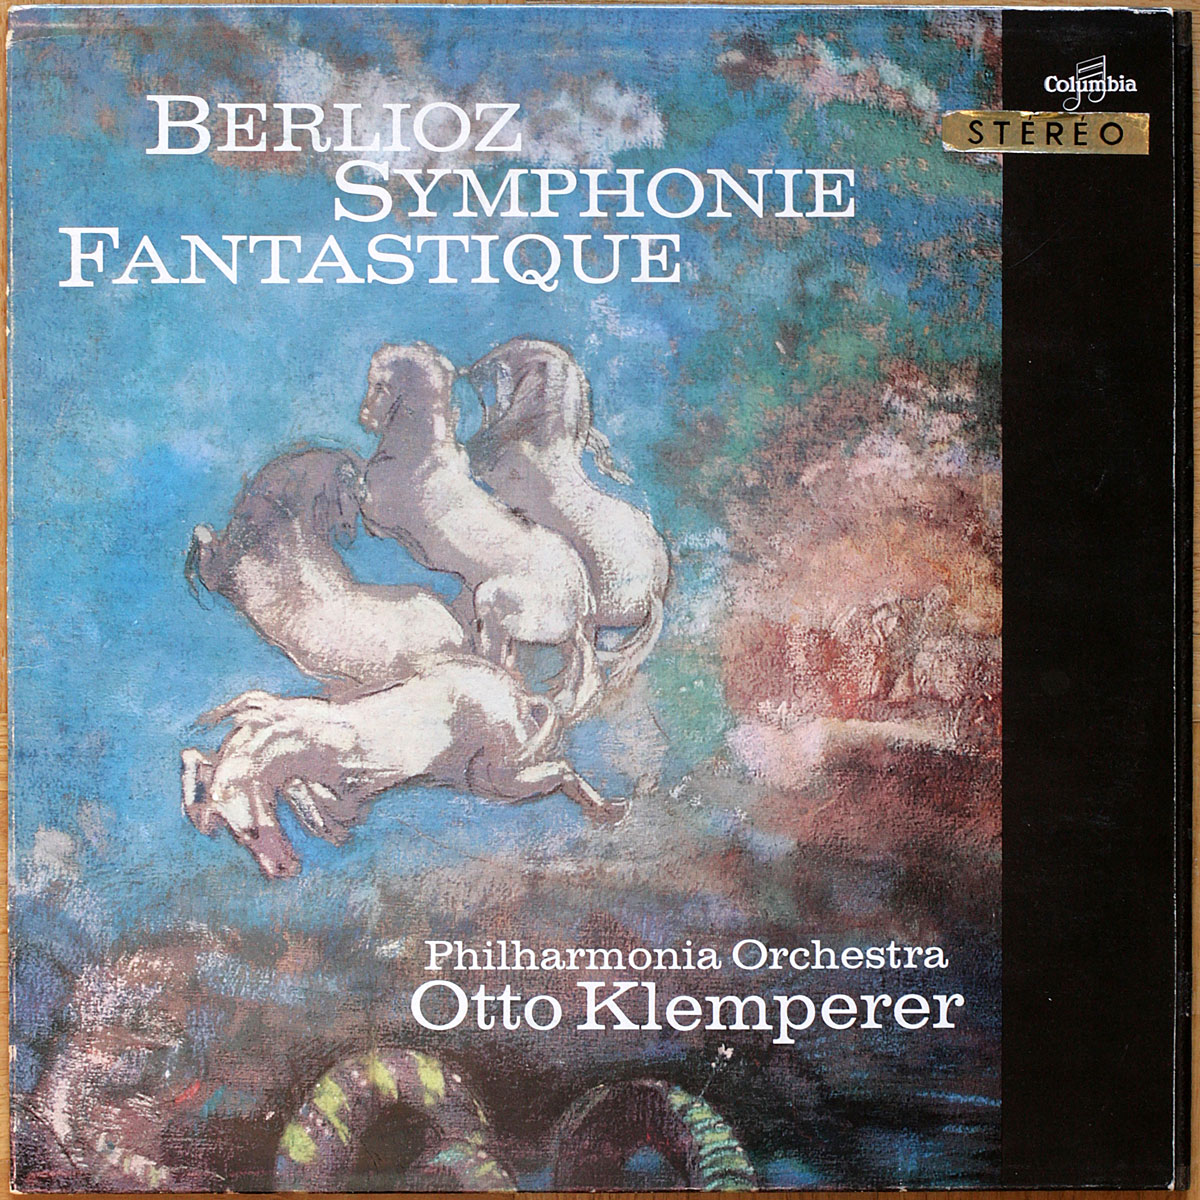 Berlioz • Symphonie fantastique • Columbia SAXF 1013 • Philharmonia ...